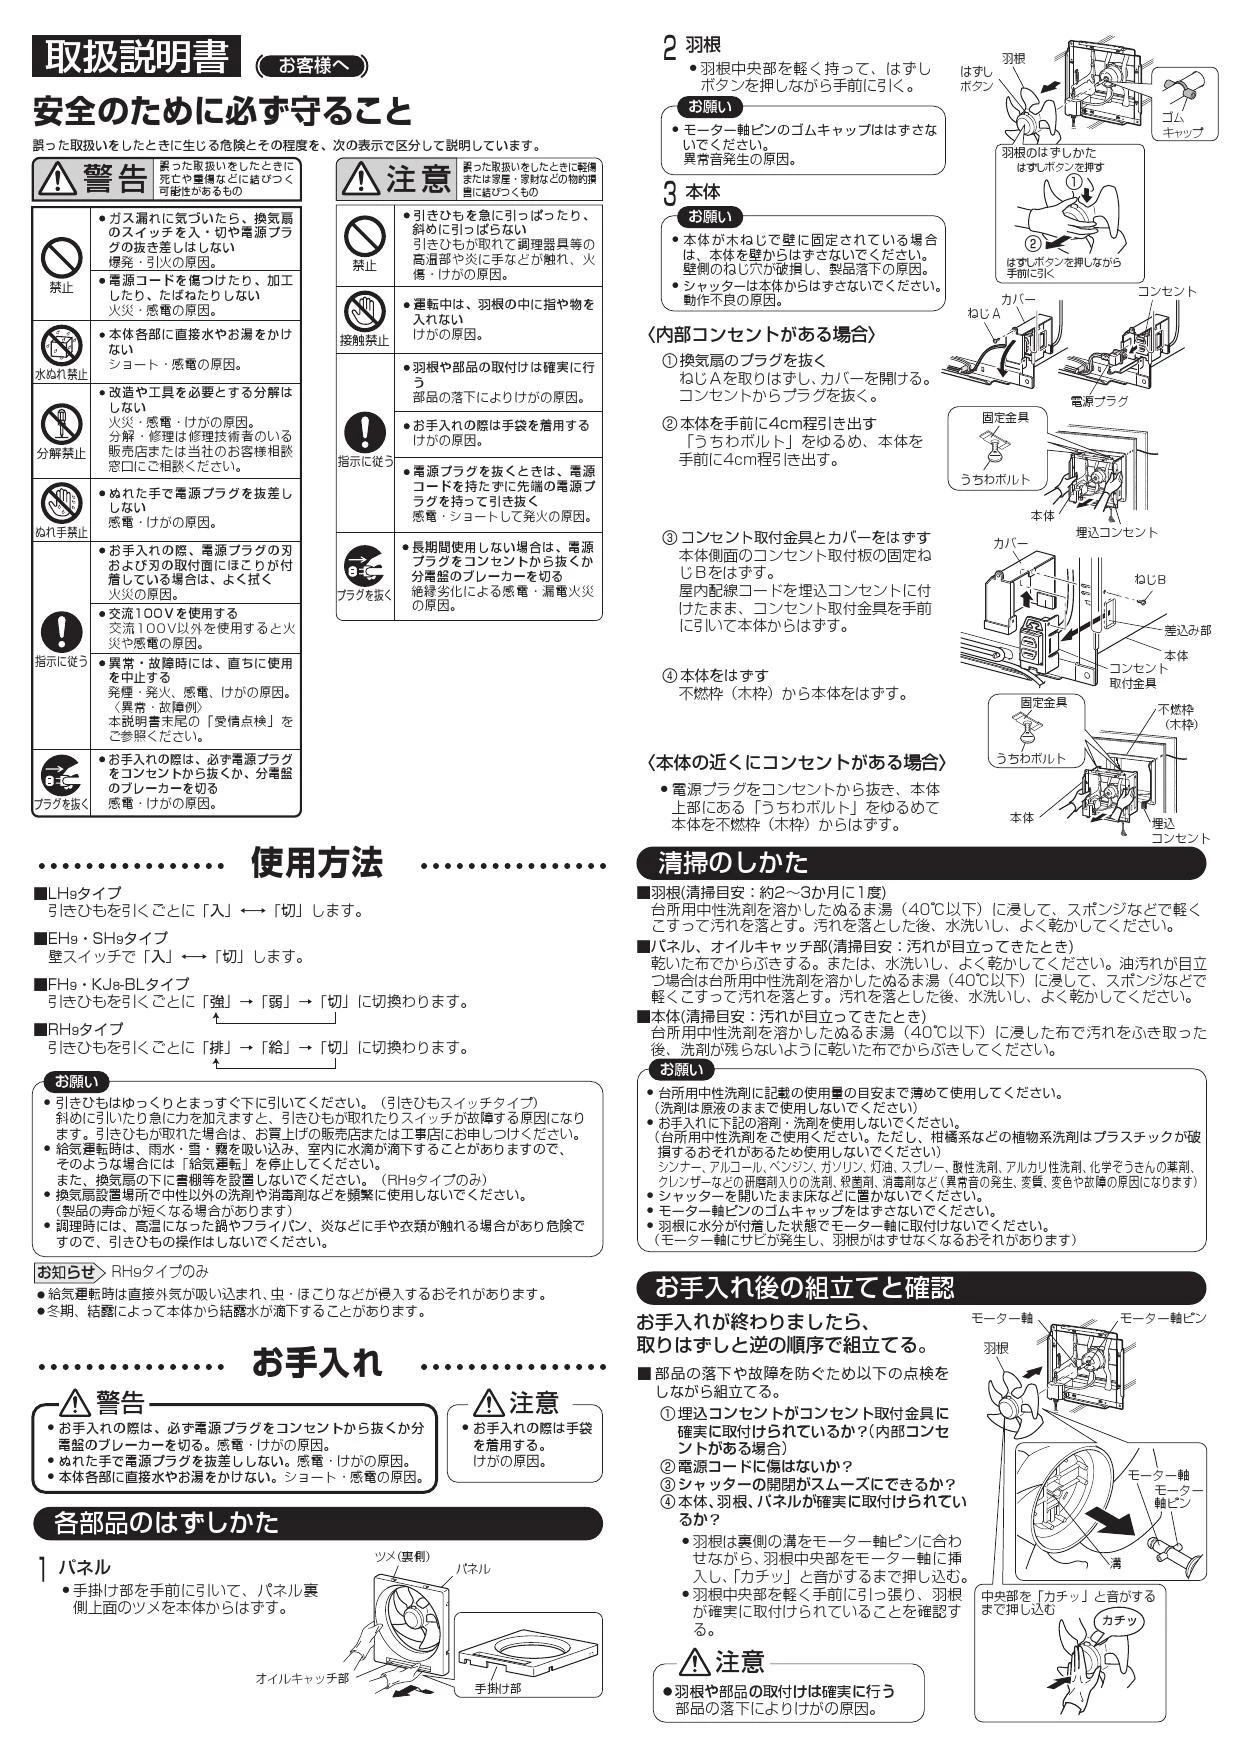 【新品未使用】三菱 標準換気扇 クリーンコンパック EX-30EH9